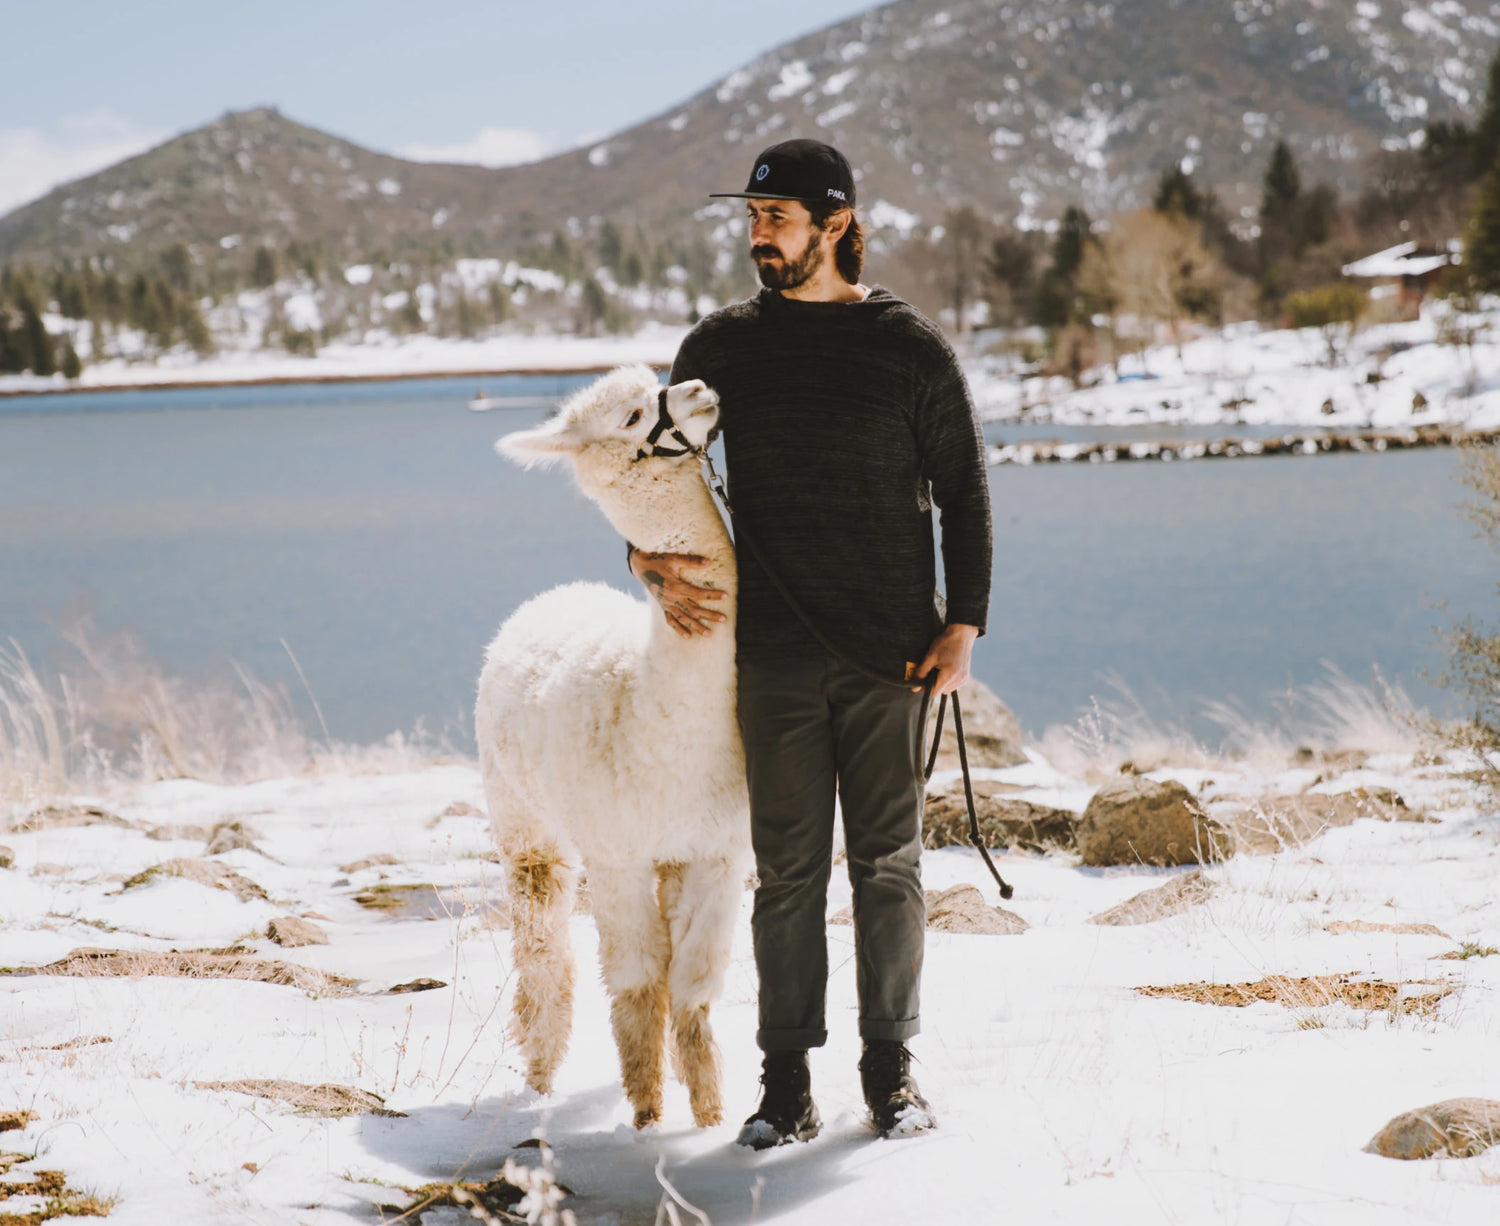 A man hugging a white alpaca in a snowy landscape